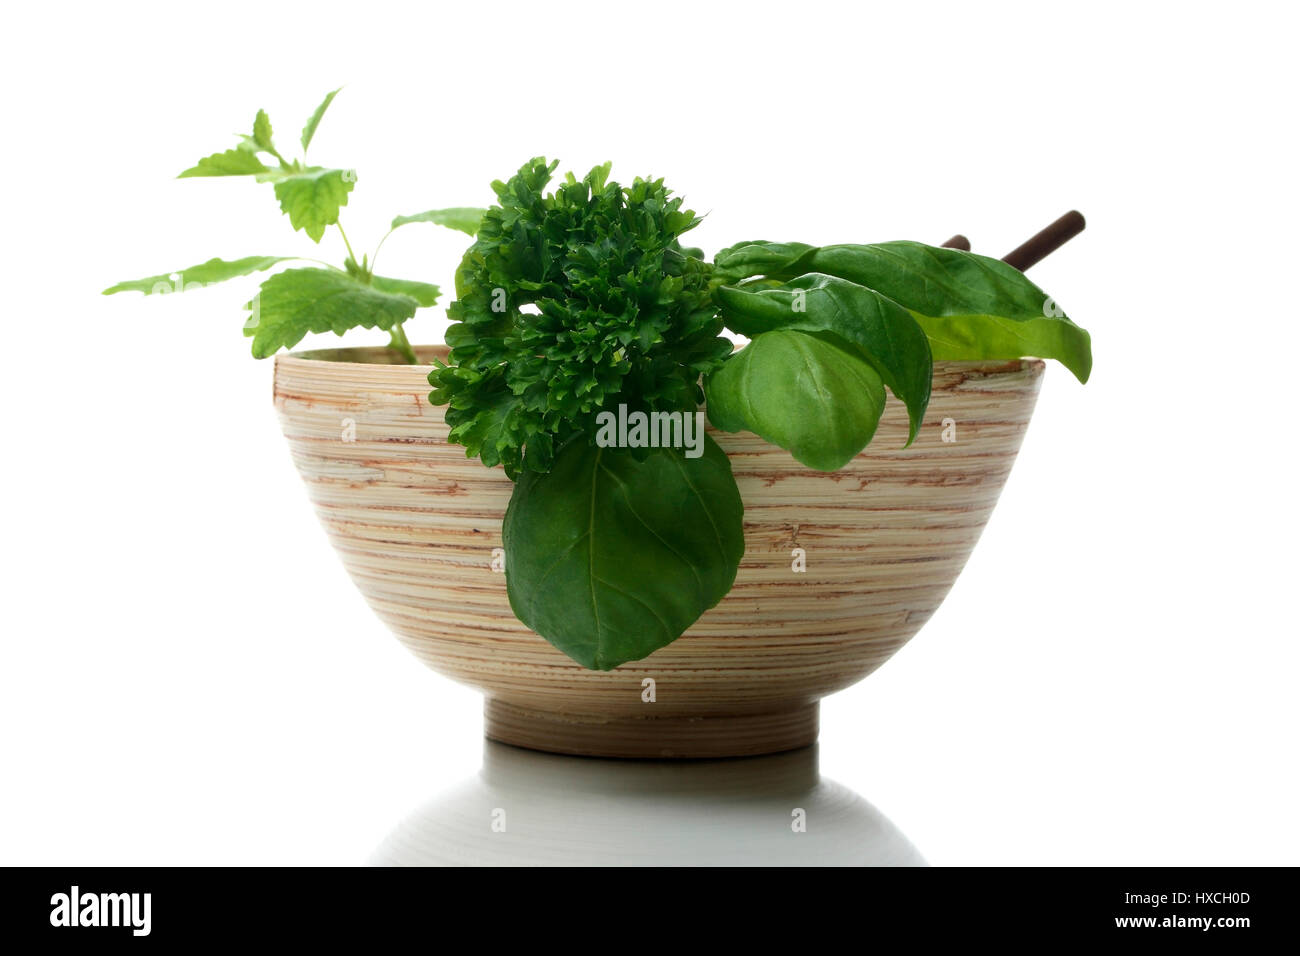 Bowl with herbs, Schale mit Kraeuter Stock Photo